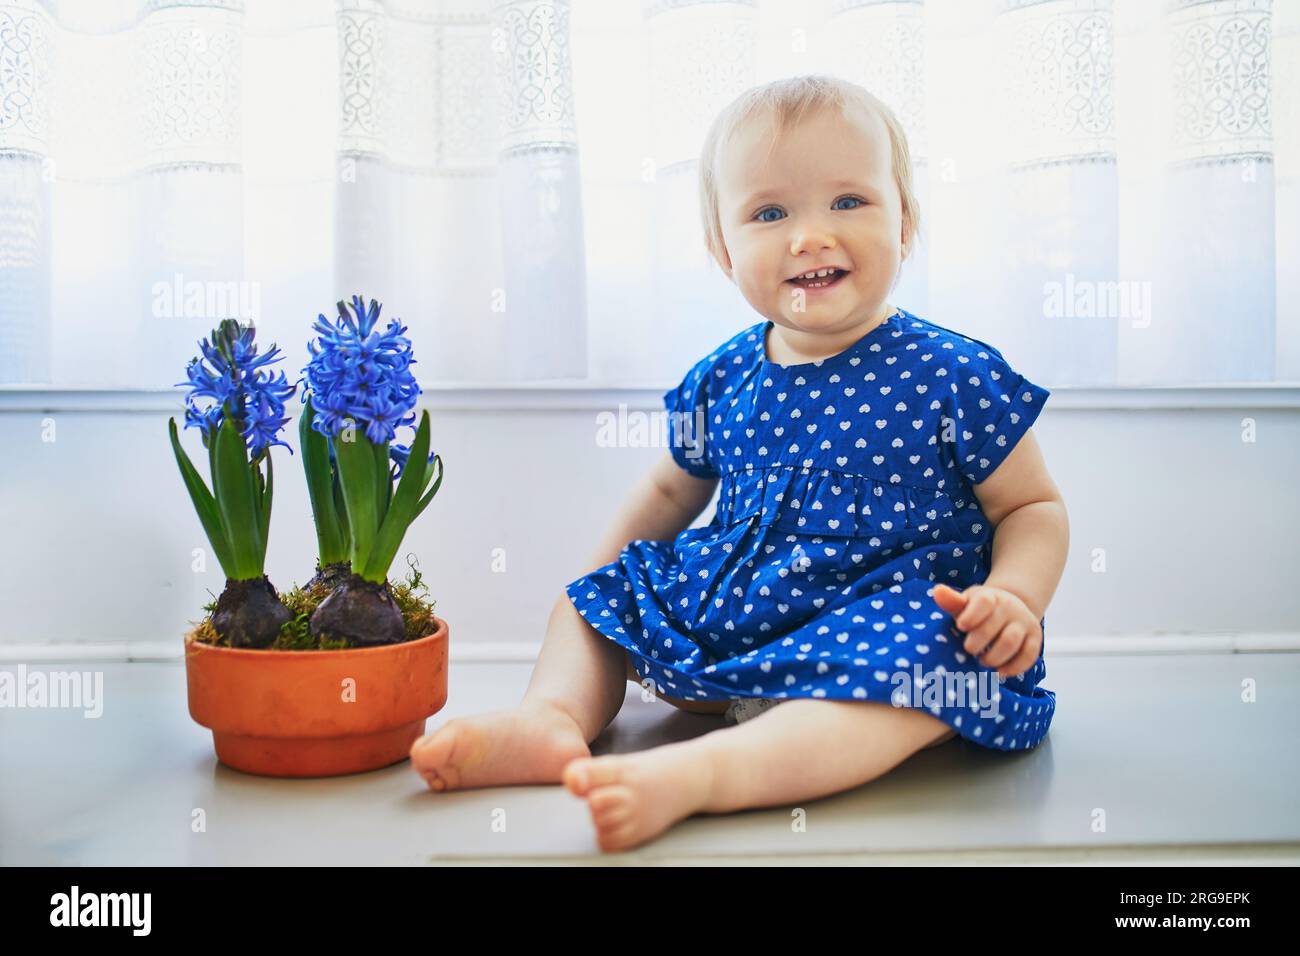 Ein kleines Mädchen in blauem Kleid, das auf dem Fensterbrett mit blauen Hyazinthen sitzt. Kleines Kind zu Hause im sonnigen Kinderzimmer. Ein Kleinkind, das mit Blumen Spaß hat Stockfoto